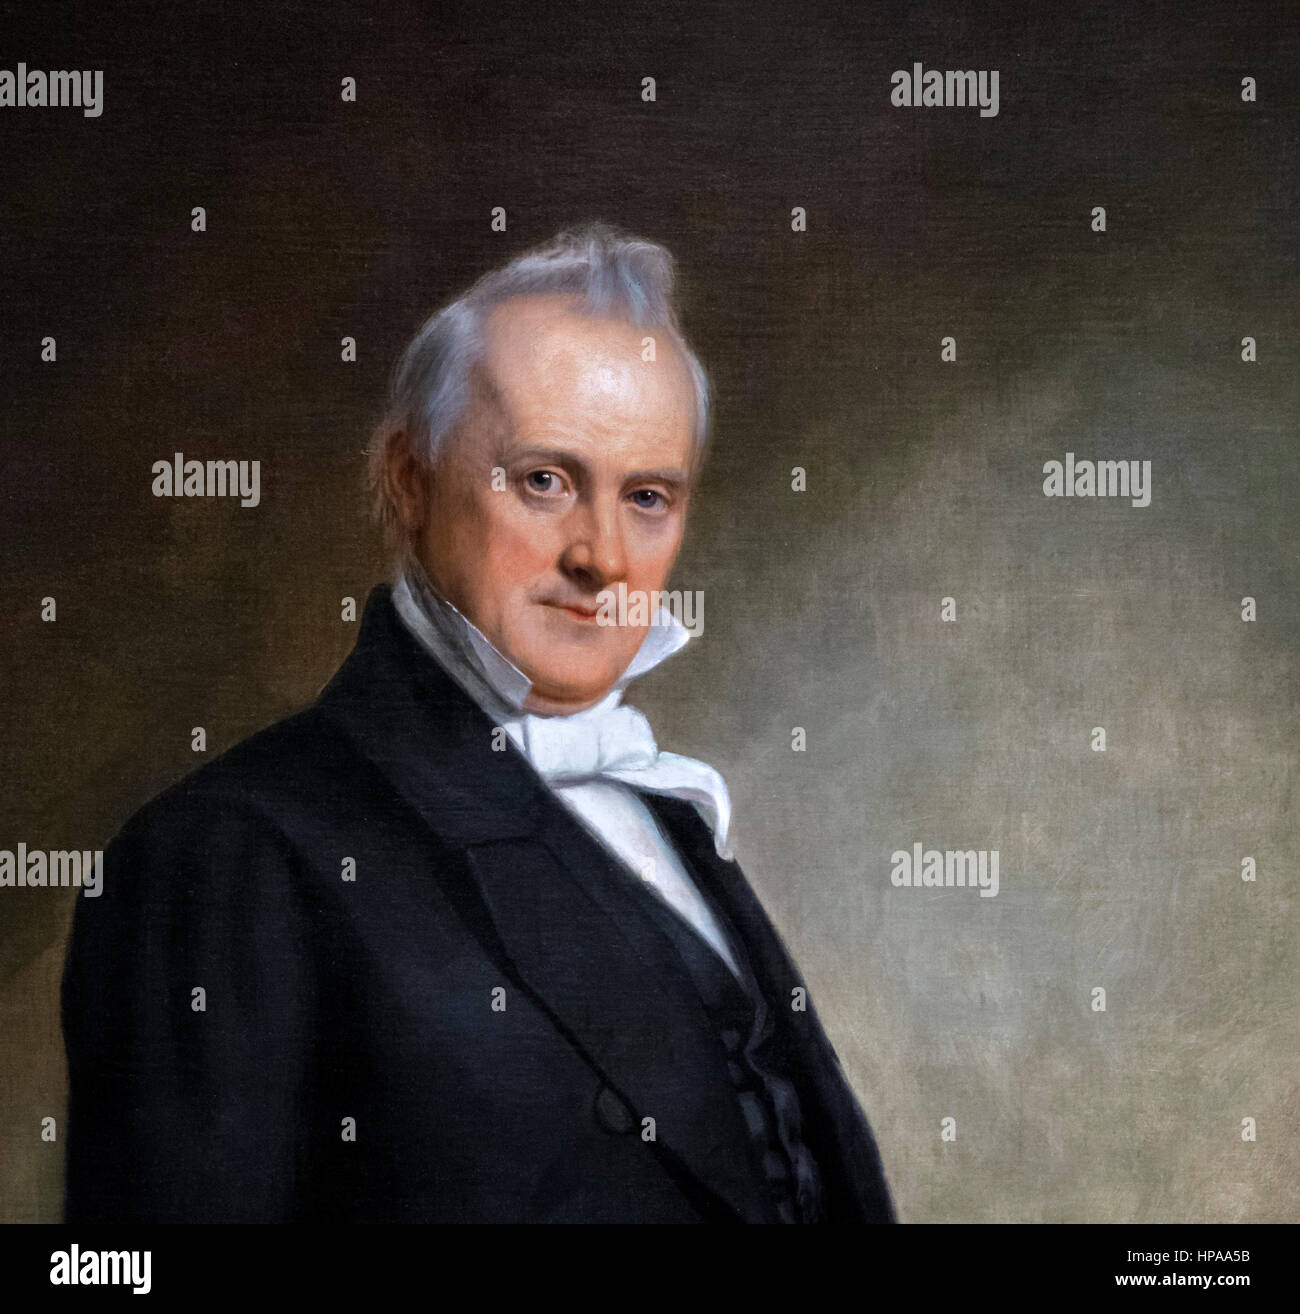 James Buchanan (1791-1868). Porträt des US-Präsidenten James Buchanan von 15. von George Peter Alexander Healy, Öl auf Leinwand, 1859. Detail aus einem größeren Gemälde, HPAA5C. Stockfoto